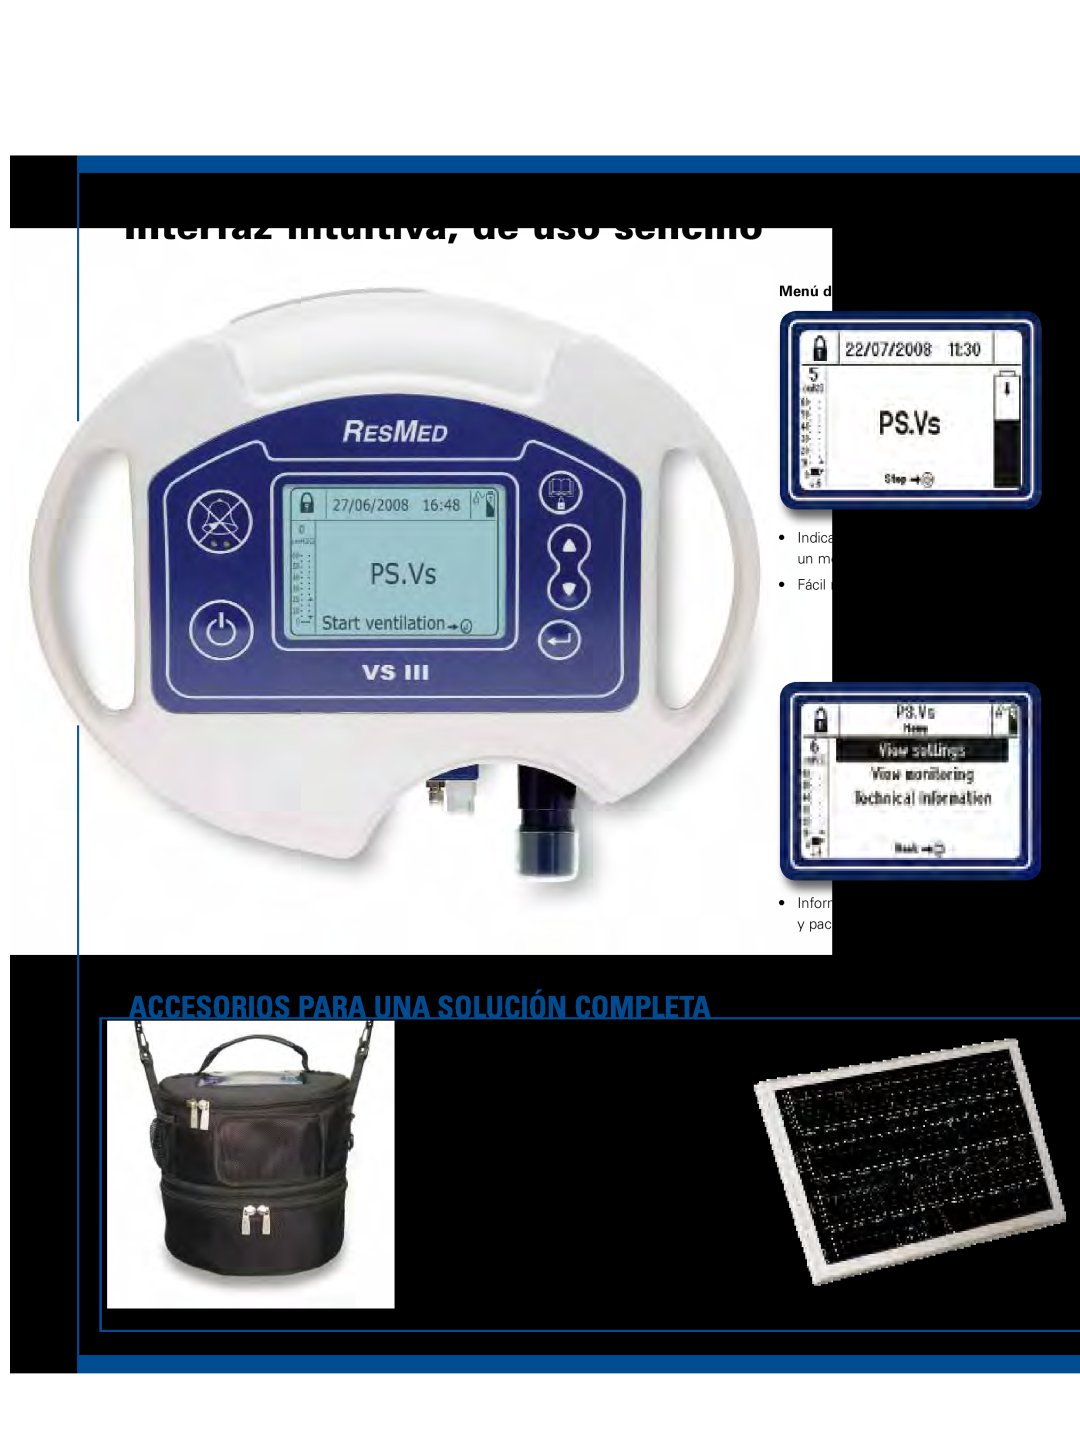 ResMed VS III manual Interfaz intuitiva, de uso sencillo, Accesorios pARA una solución completA, Menú del paciente 